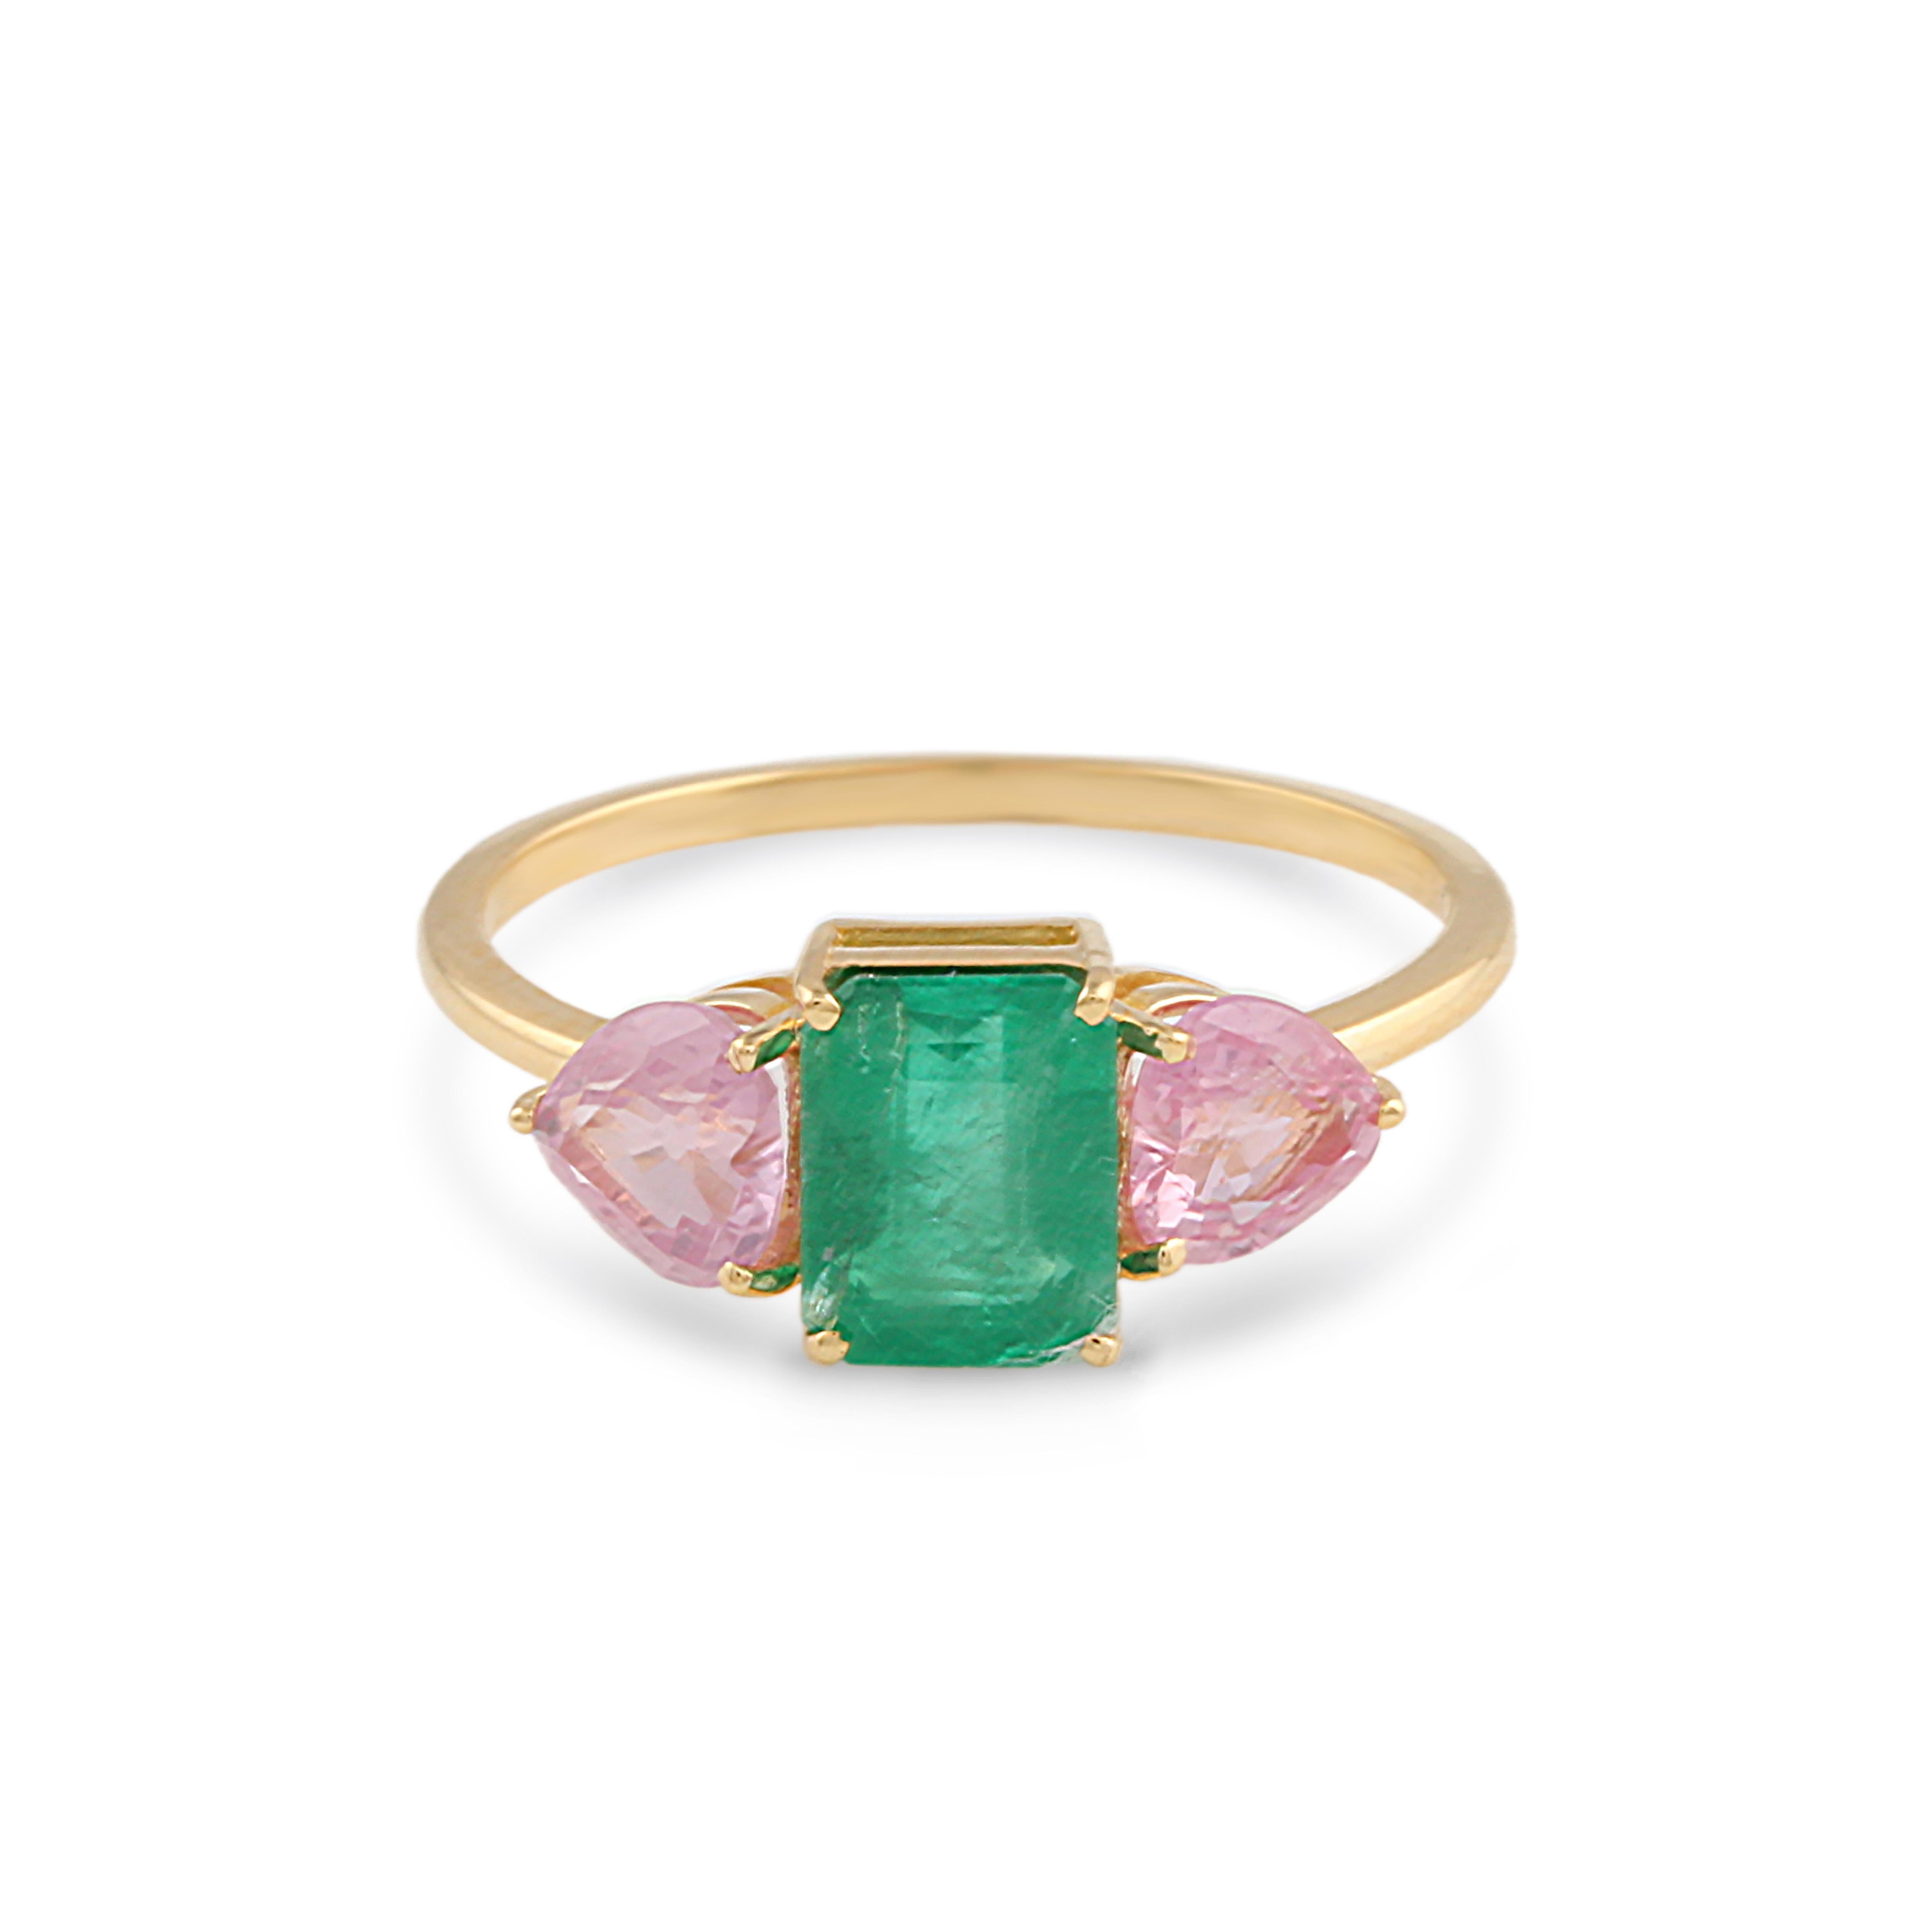 Tresor Beautiful Ring Funktion 2.15 Karat Edelstein. Die Ringe sind eine Ode an die luxuriöse und doch klassische Schönheit mit funkelnden Edelsteinen und femininen Farbtönen. Ihr zeitgemäßes und modernes Design macht sie perfekt und vielseitig zu